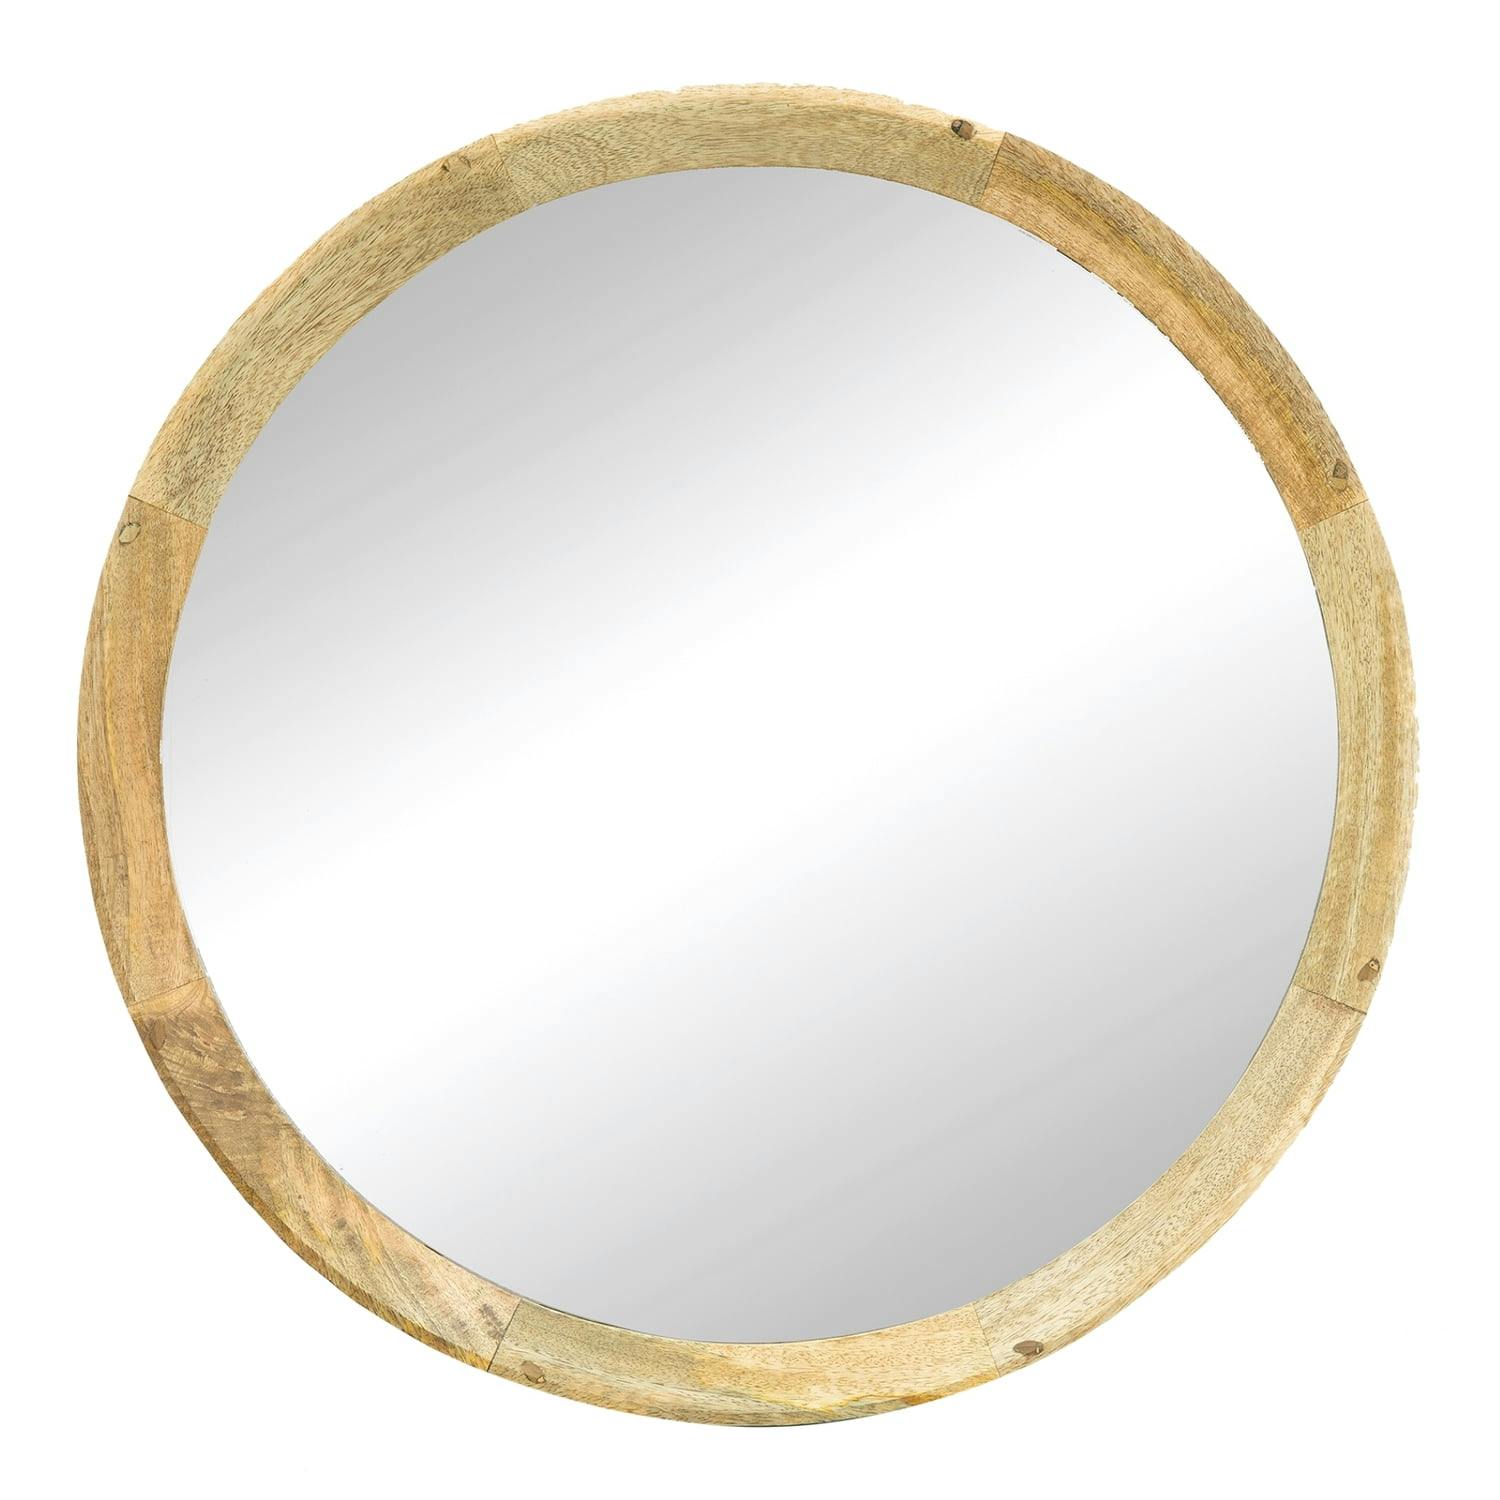 Transitional 20" Round Mango Wood Porthole Wall Mirror